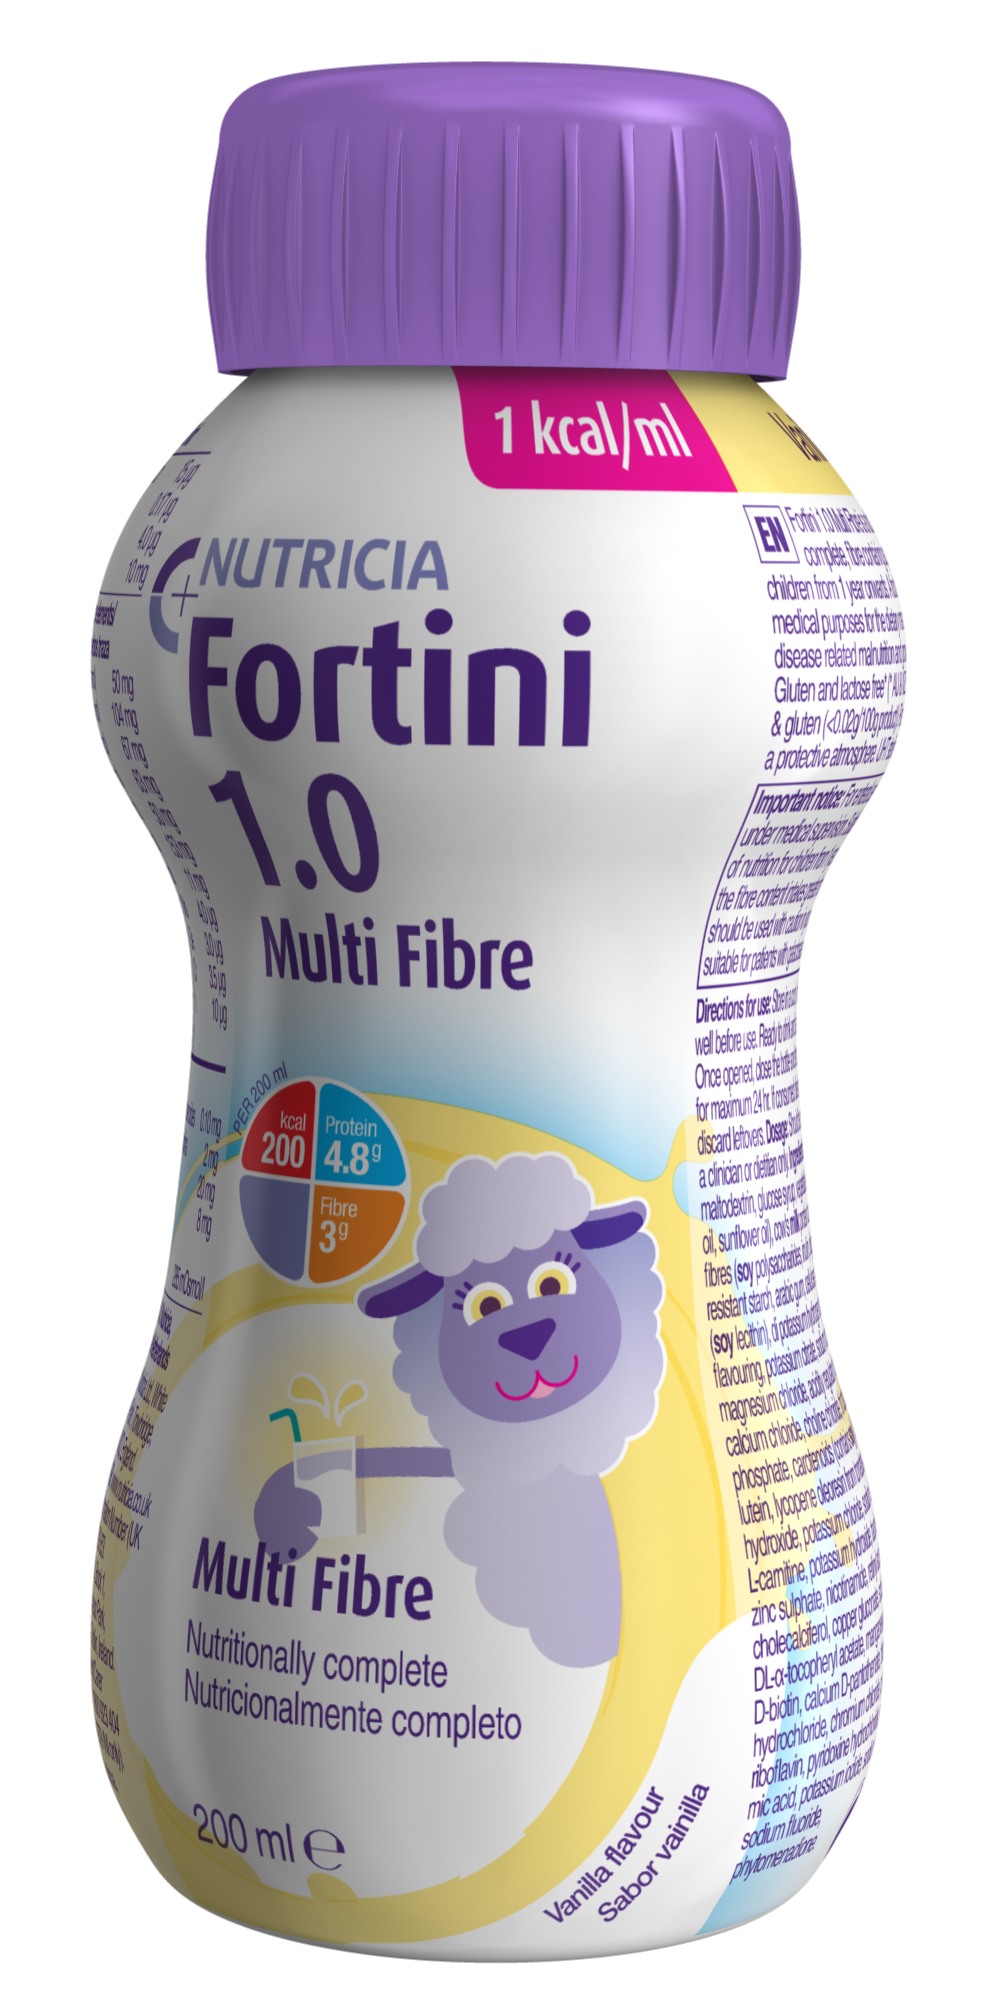 Fortini 1.0 Multi Fibre packshot